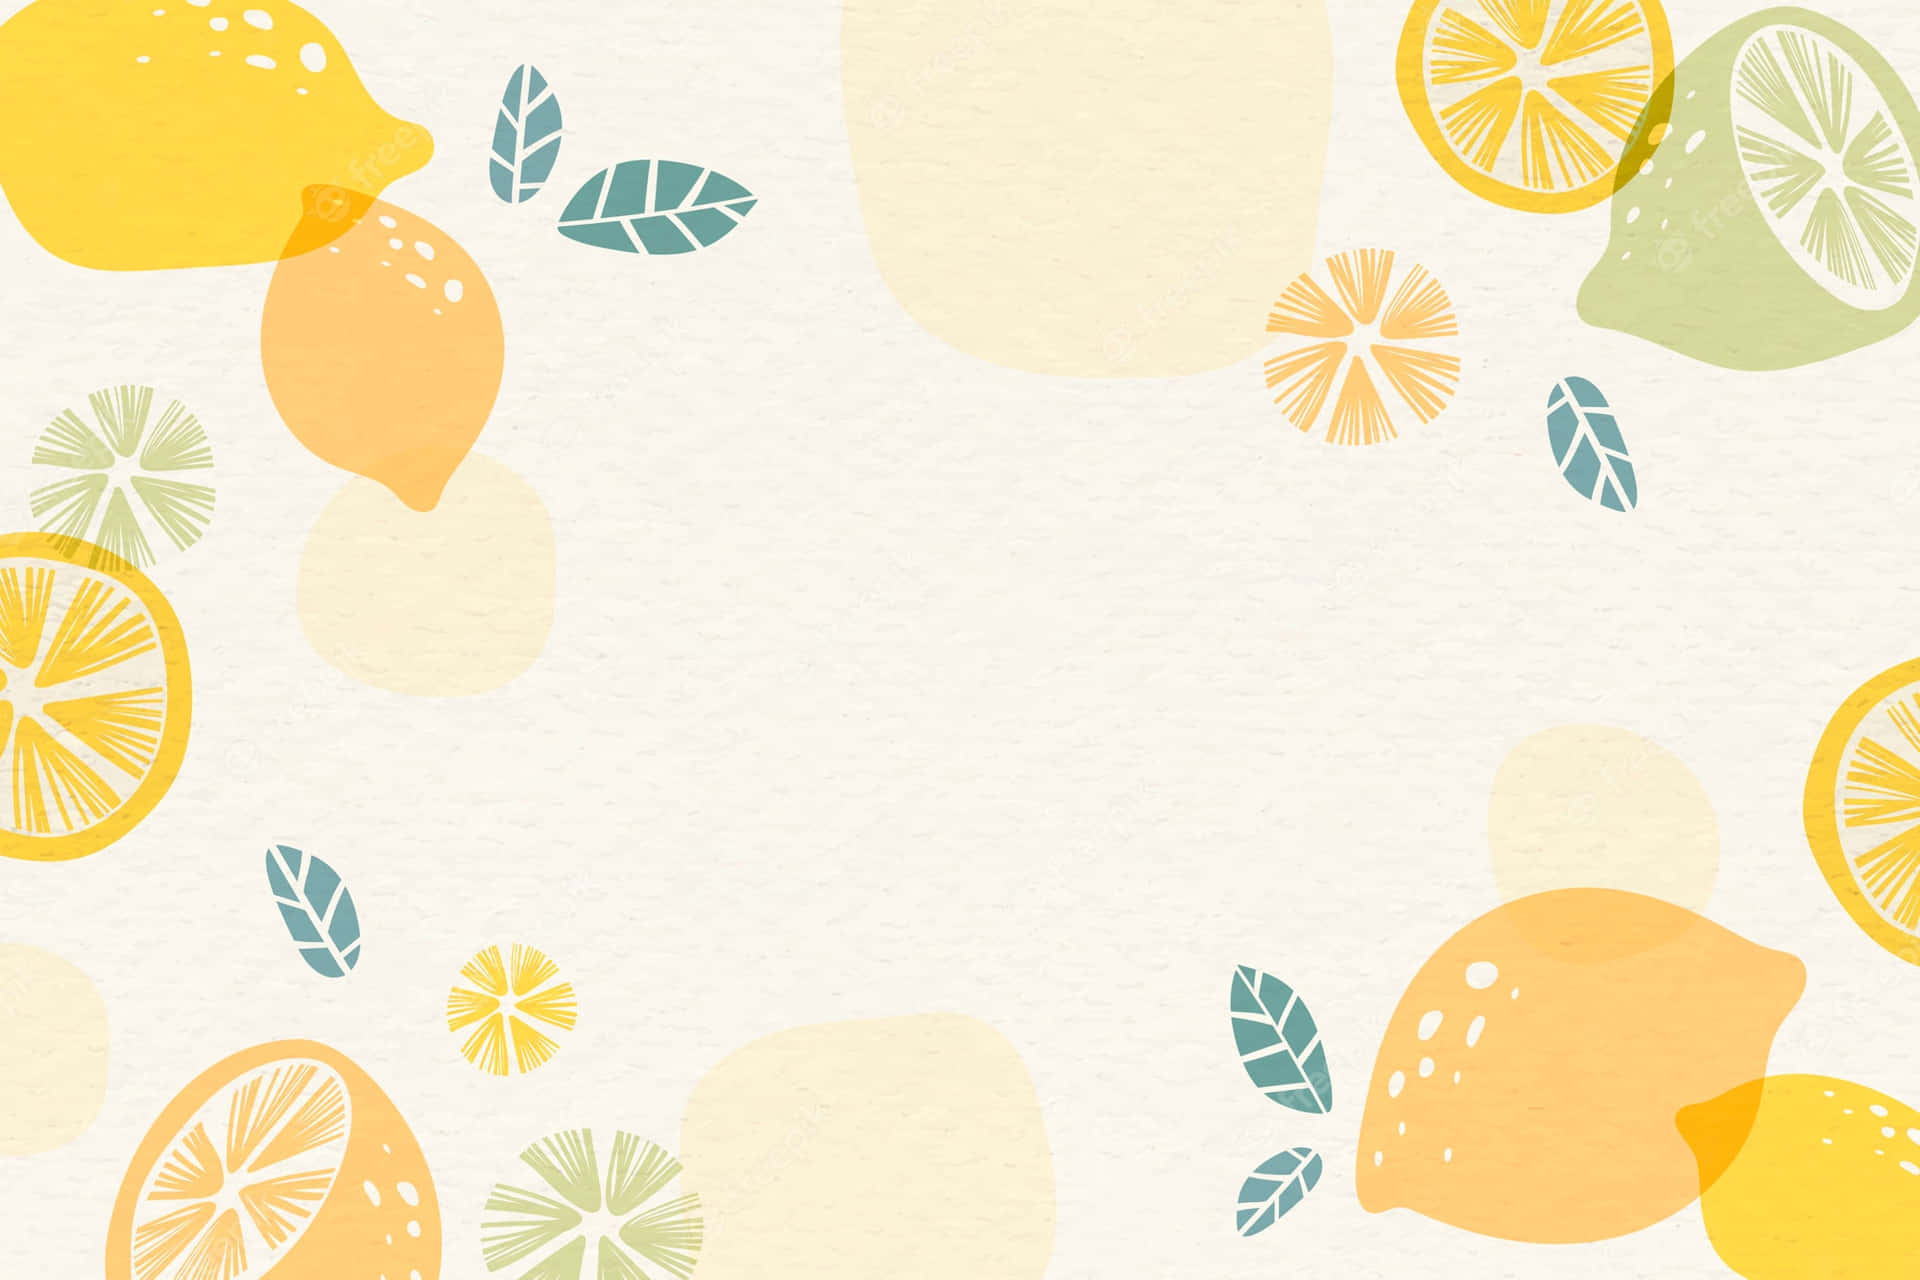 Enjoy the freshness of a lemon!